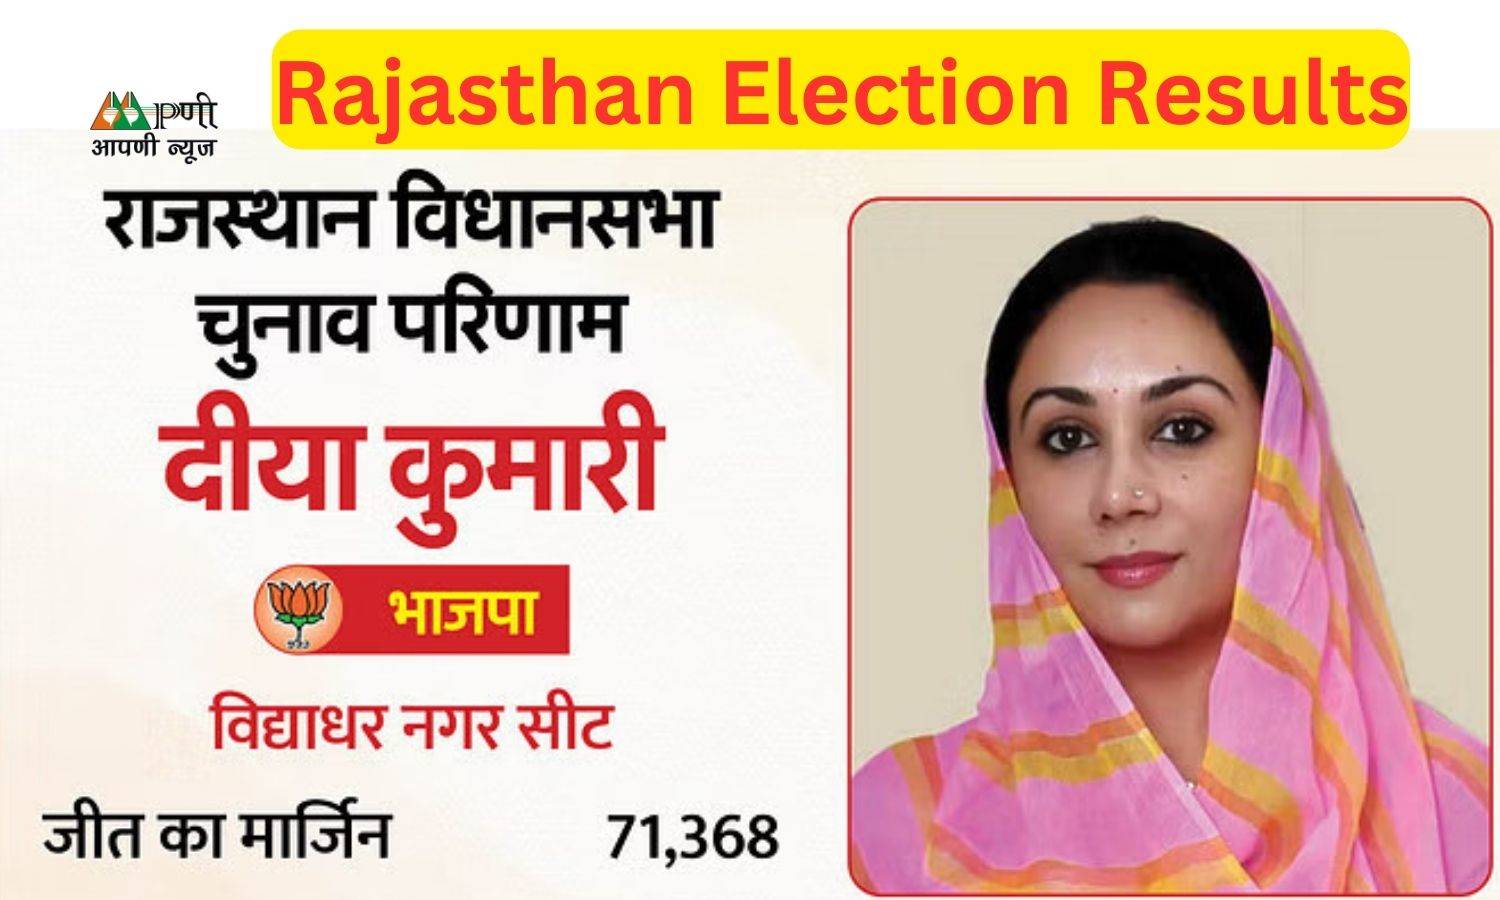 Rajasthan Election Results: भाजपा के 7 में से 3 सांसद नहीं खिला पाये कमल, इस महिला सांसद ने दर्ज की बड़ी जीत